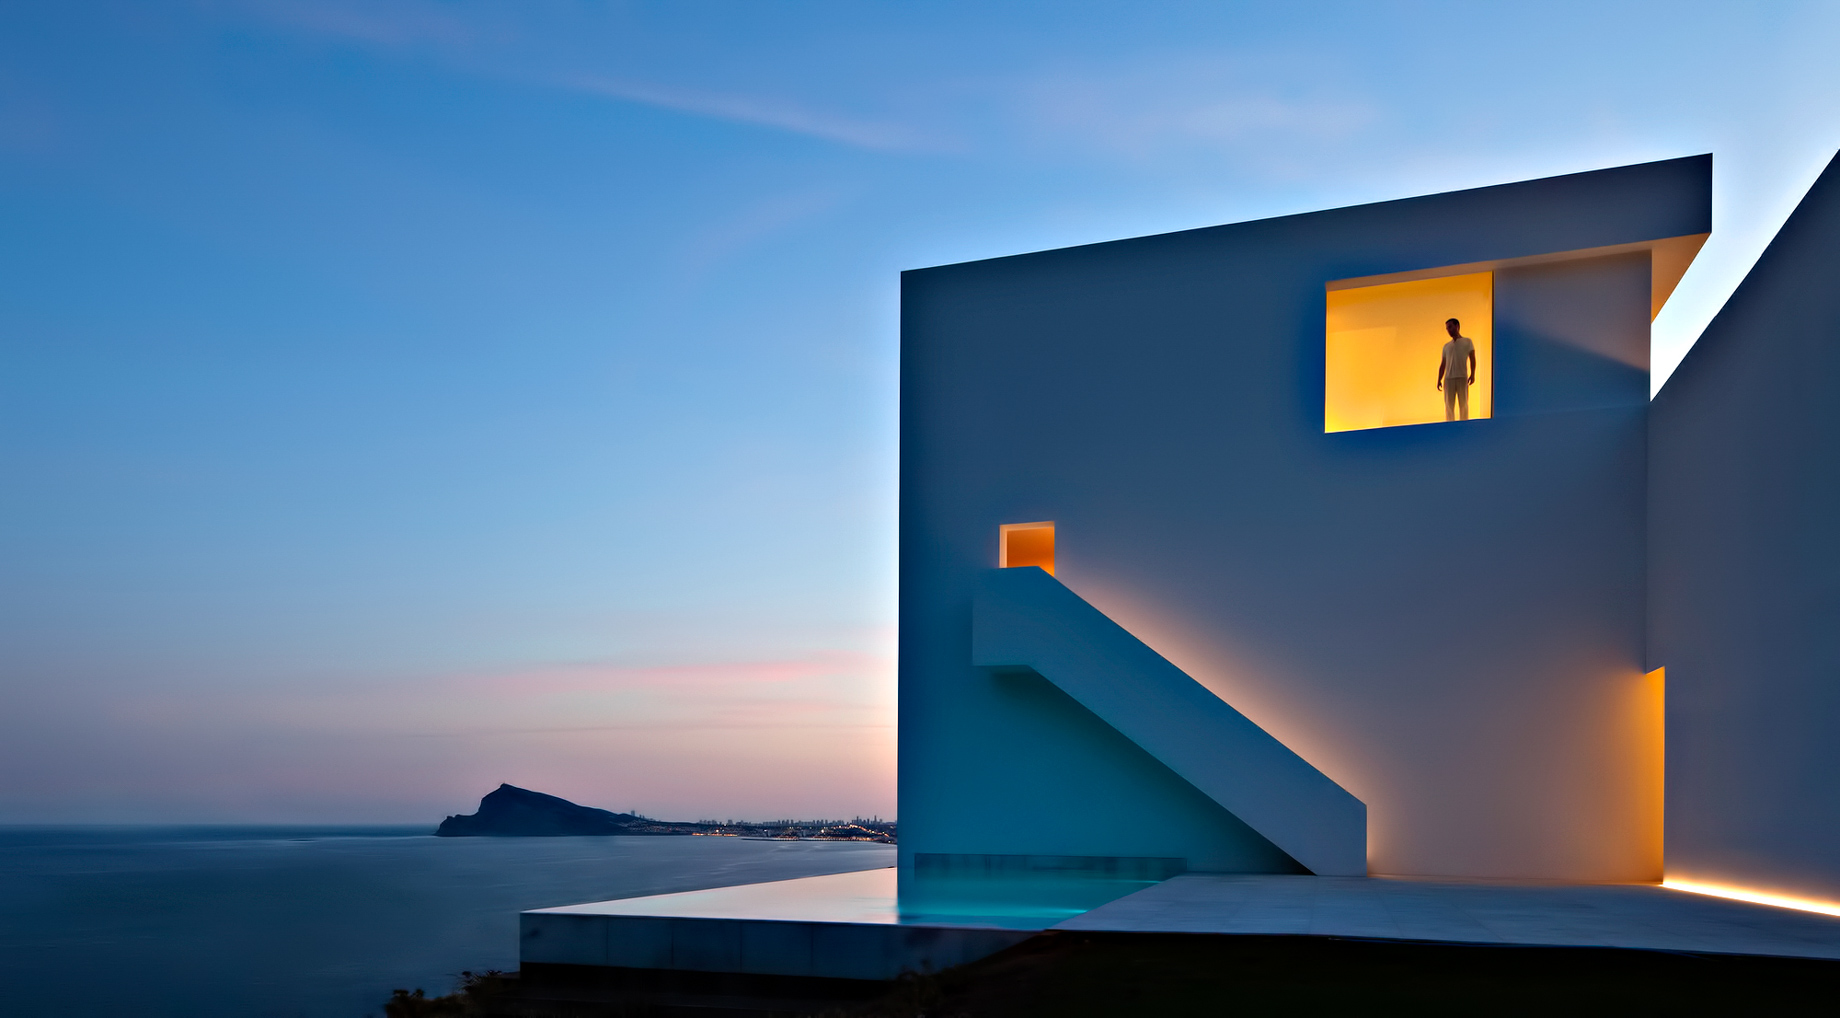 Casa del Acantilado Luxury Residence - Calp, Alicante, Spain